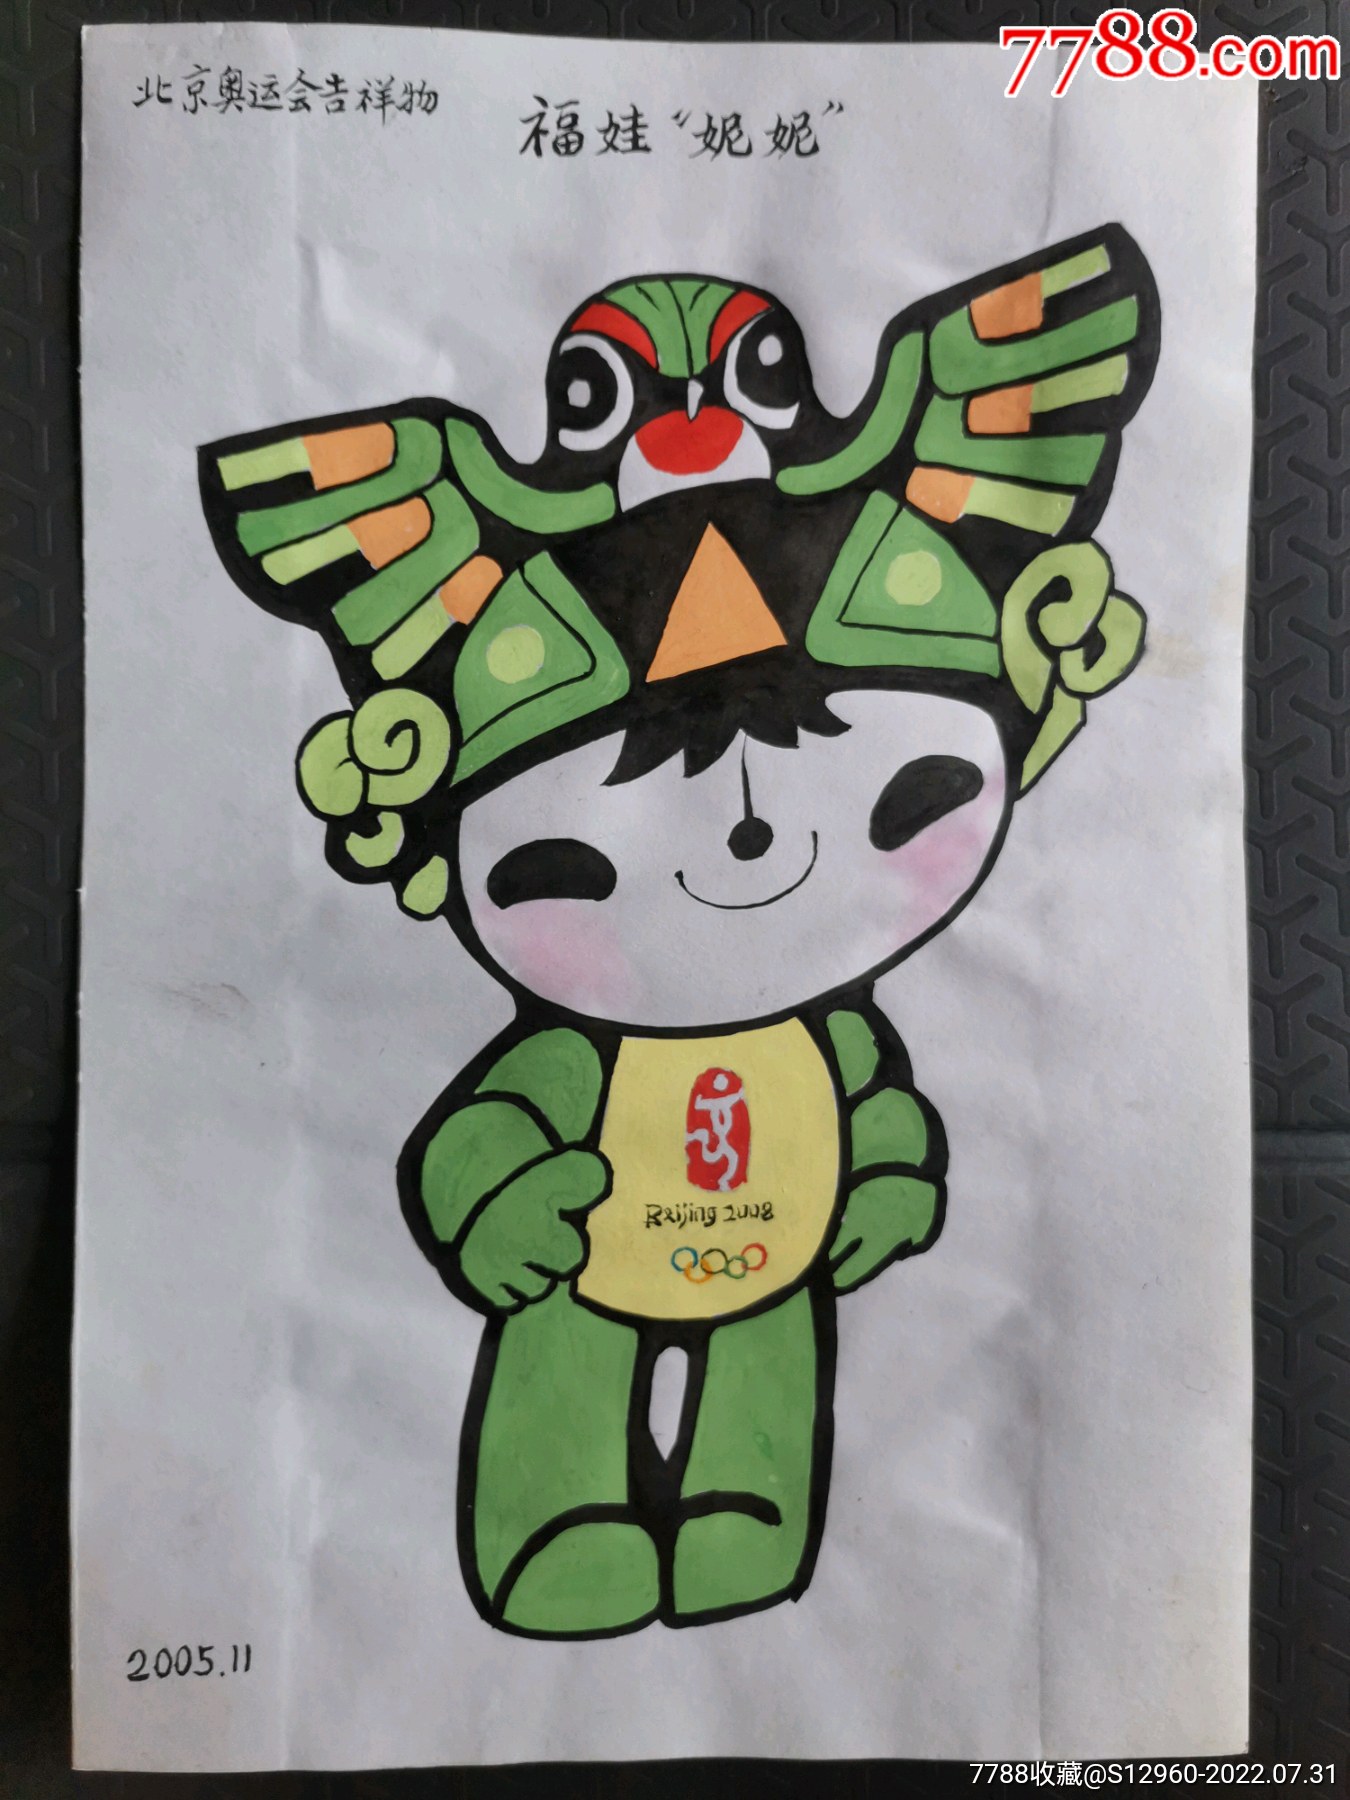 北京奥运会吉祥物画稿福娃妮妮(著名画家符仕柱绘